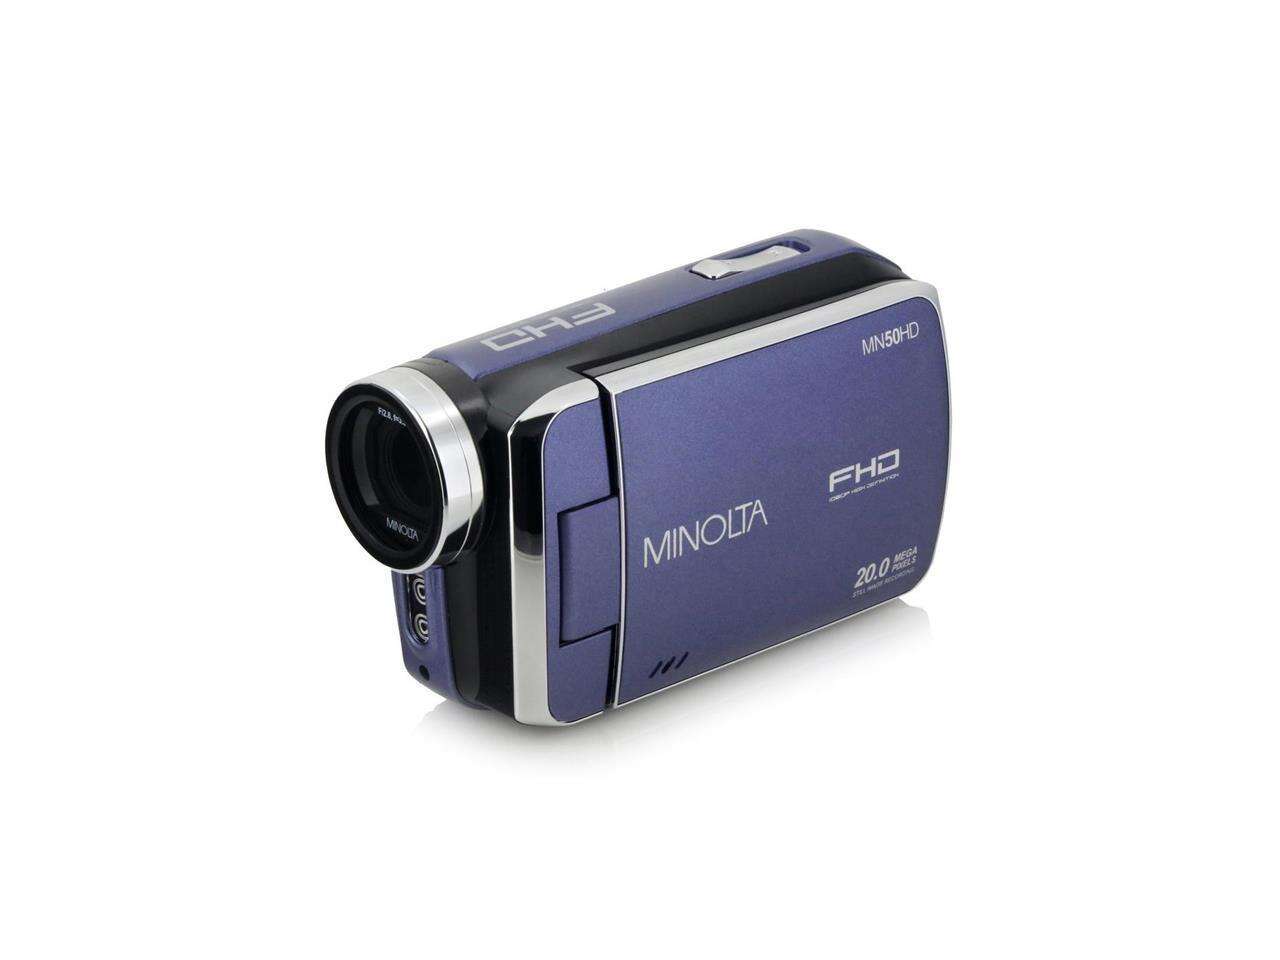 Minolta MN50HD 1080p Full HD 20MP Digital Camcorder, Blue #MN50HD-BL